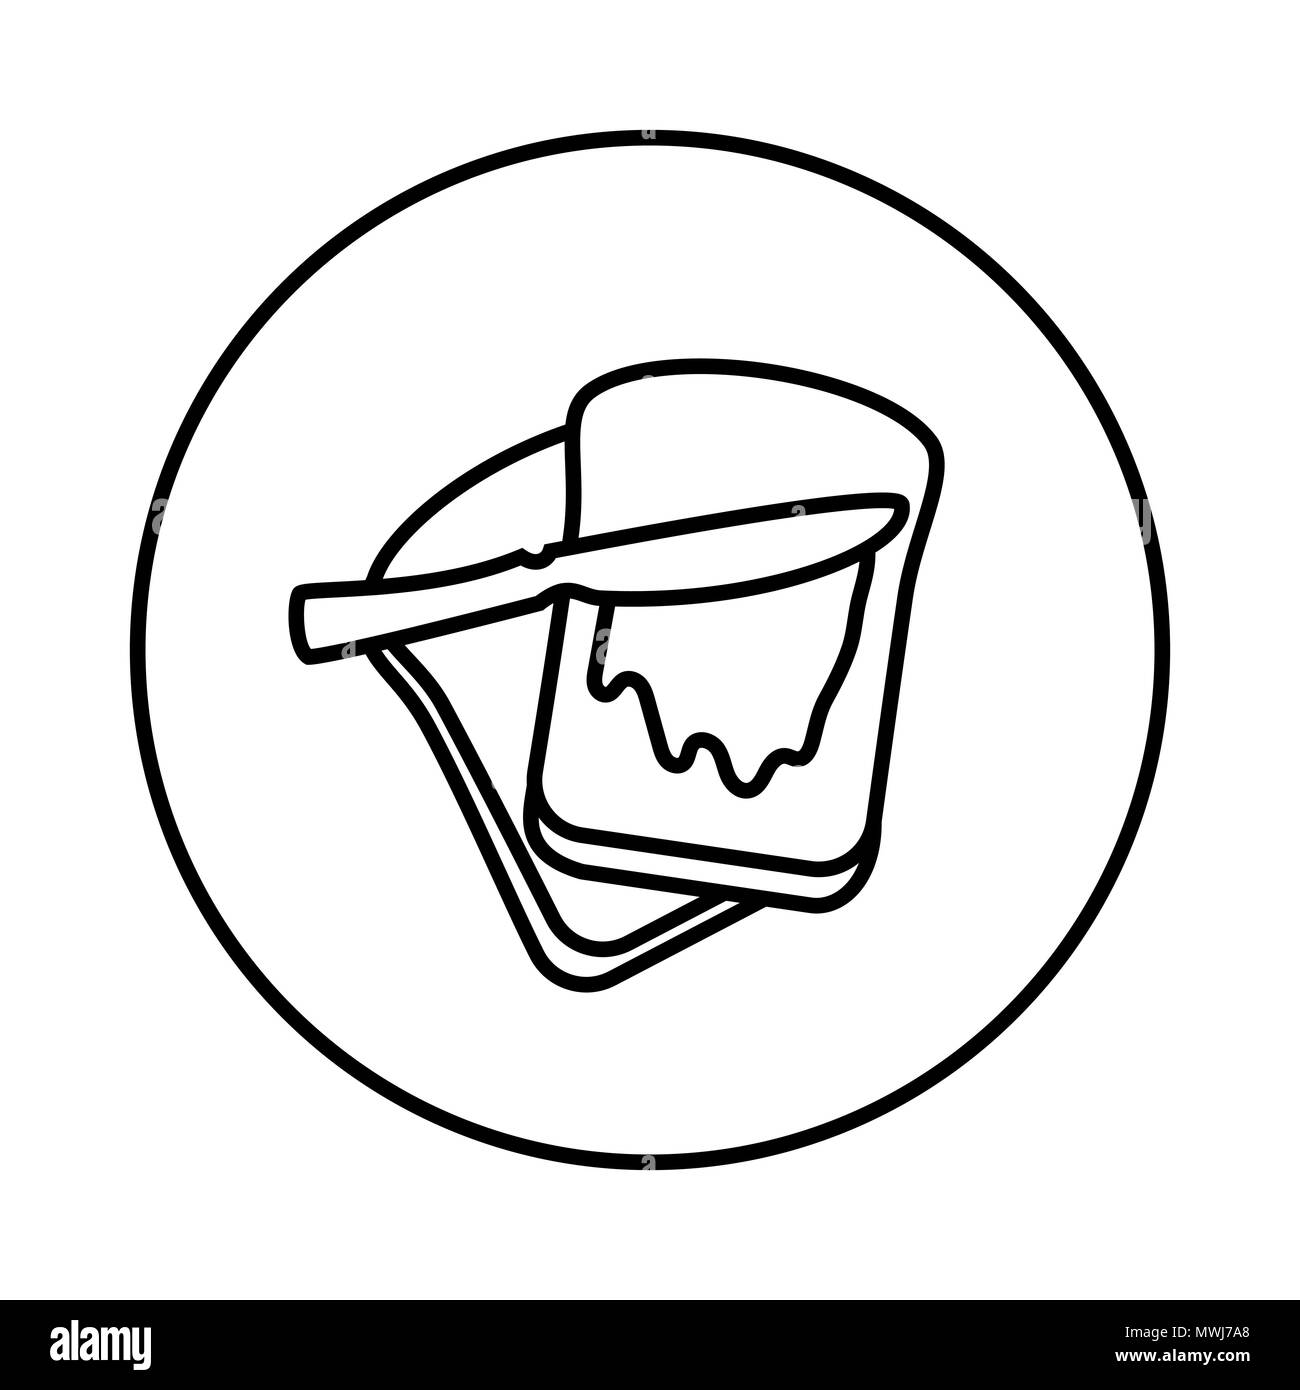 Der Vektor der Brot mit Butter Symbol in der Circle Line, iconic Symbol in einem Kreis, auf weißem Hintergrund. Vektor ein futuristisches Design. Stock Vektor